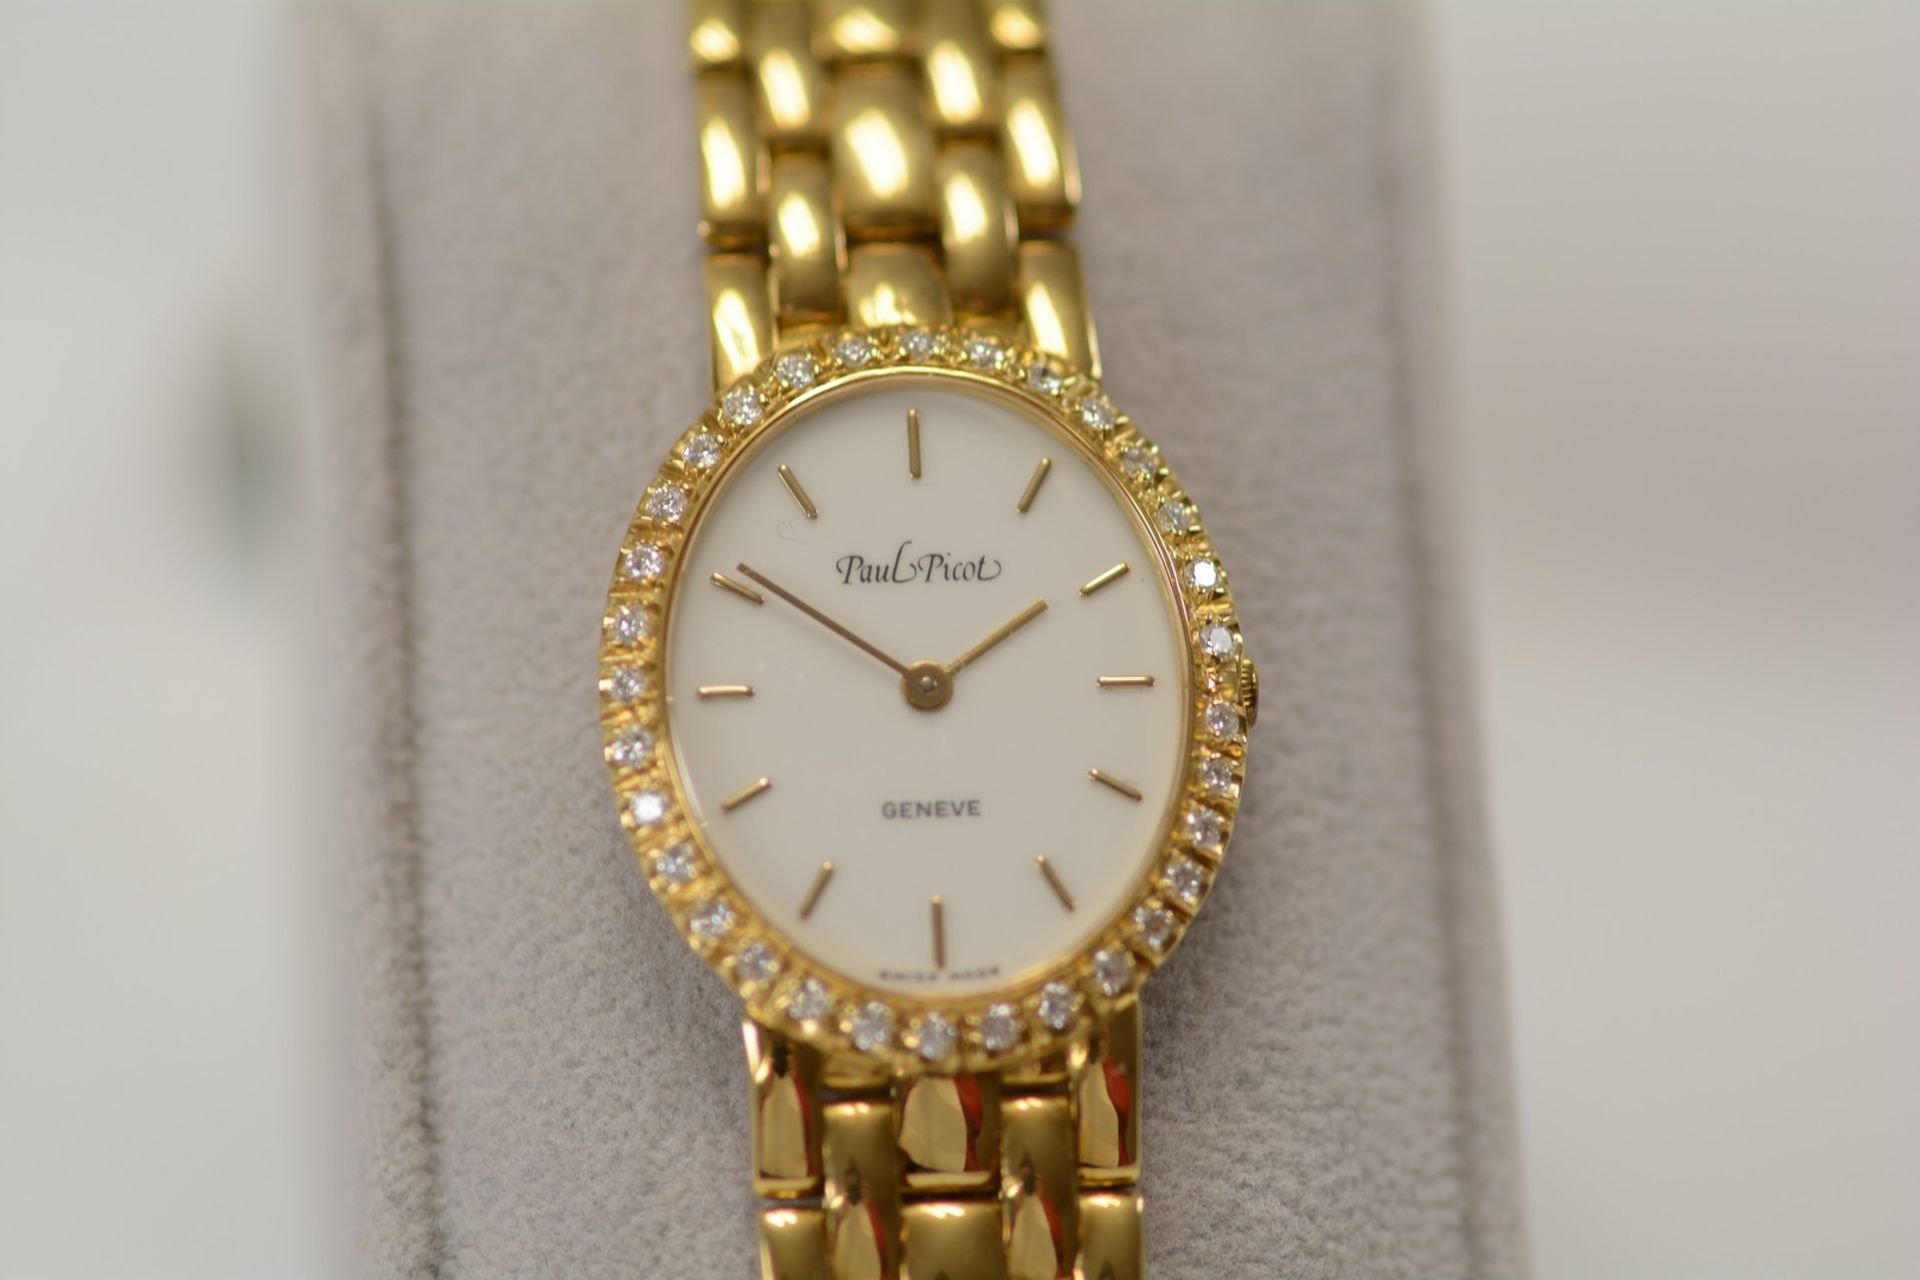 Paul Picot / Diamond - Lady's Yellow gold Wrist Watch - Image 7 of 16